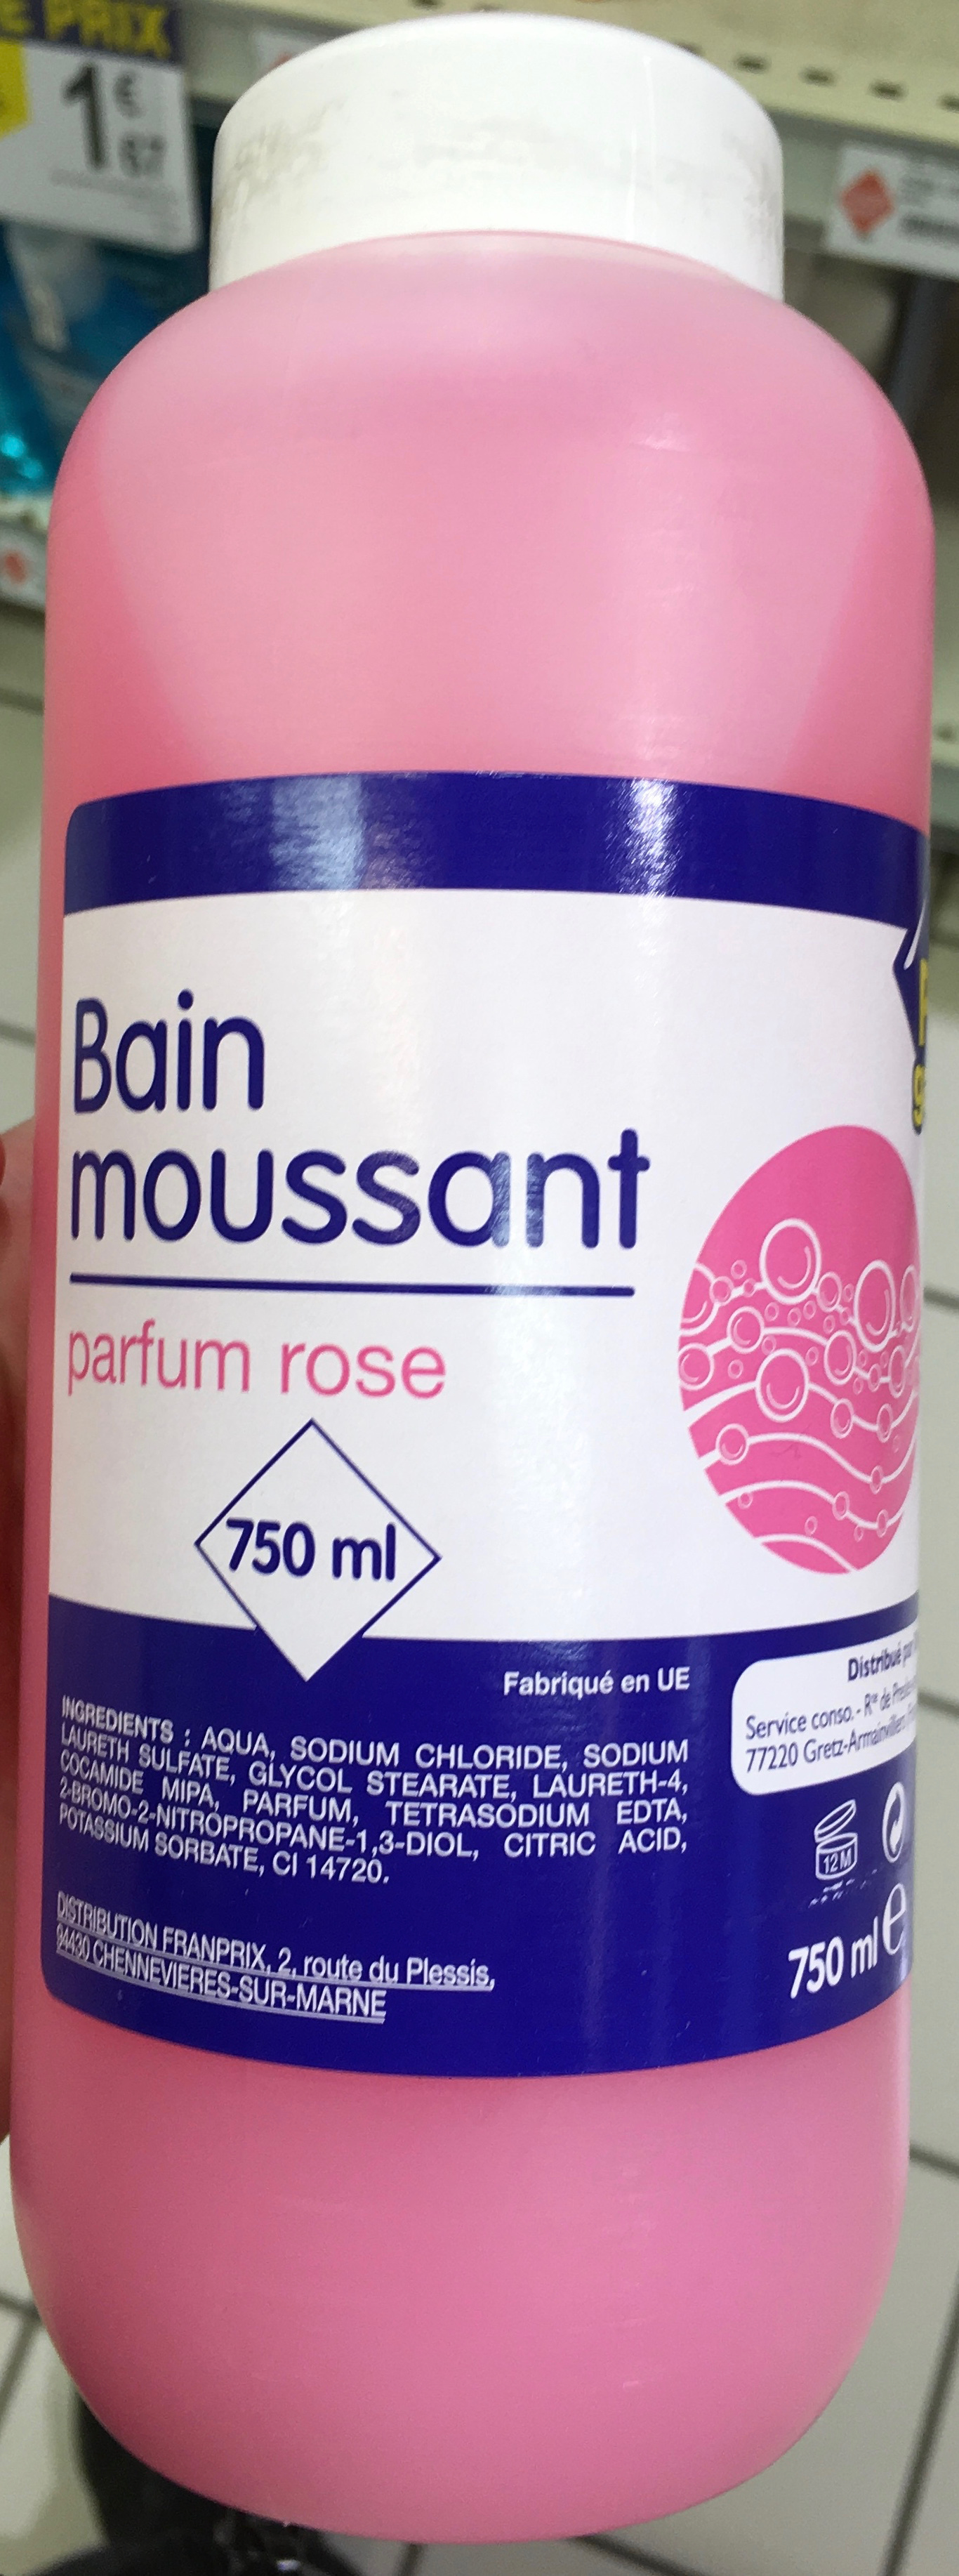 Bain moussant parfum rose - Product - fr